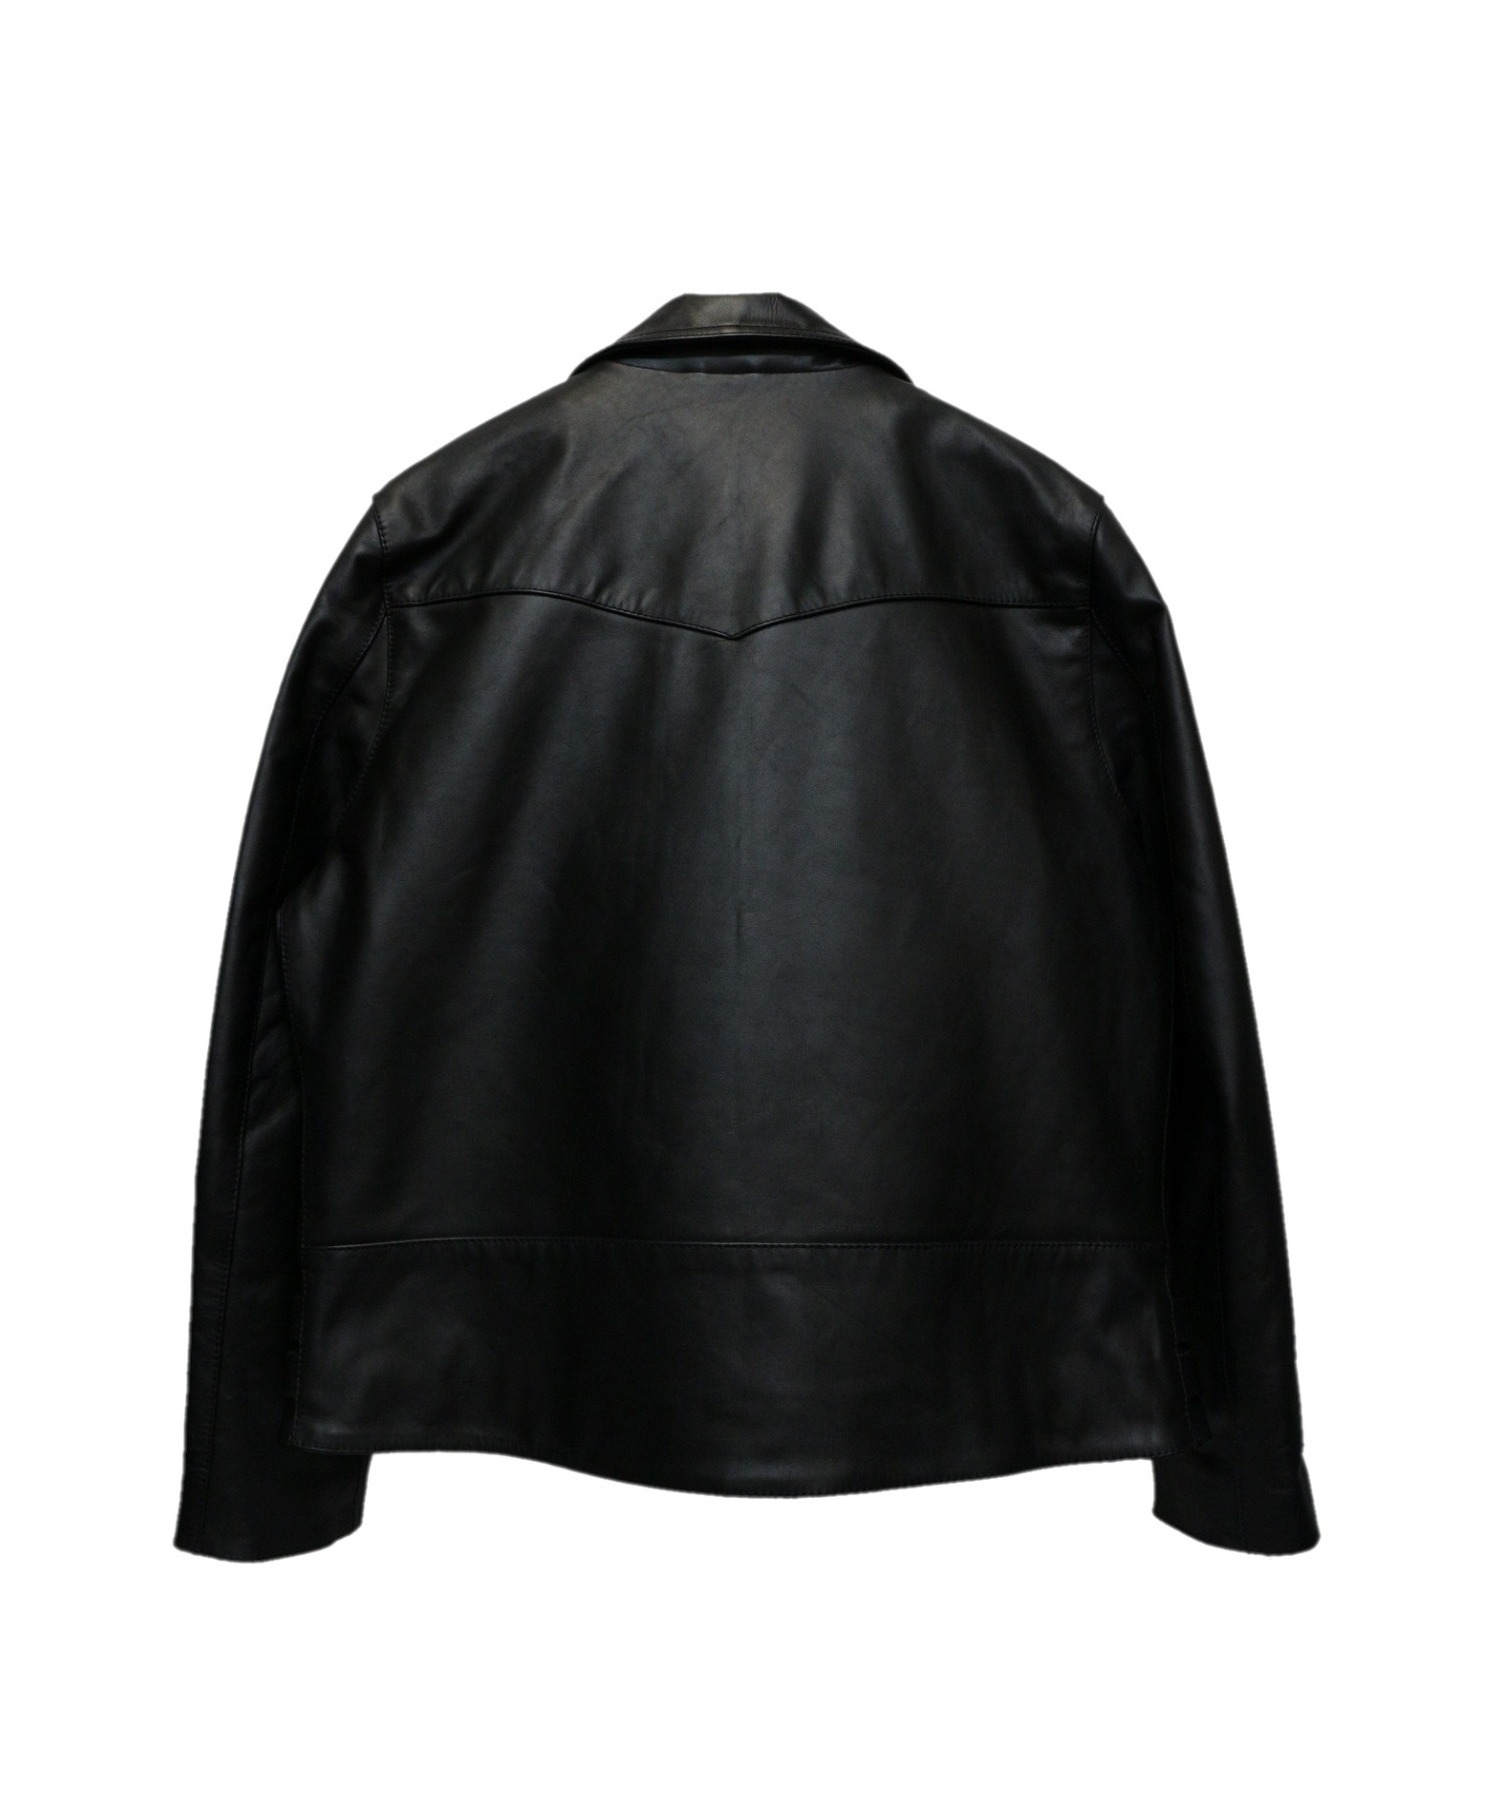 LIUGOO LEATHERS (リューグーレザーズ) ライナー付ライダースジャケット ブラック サイズ:3L